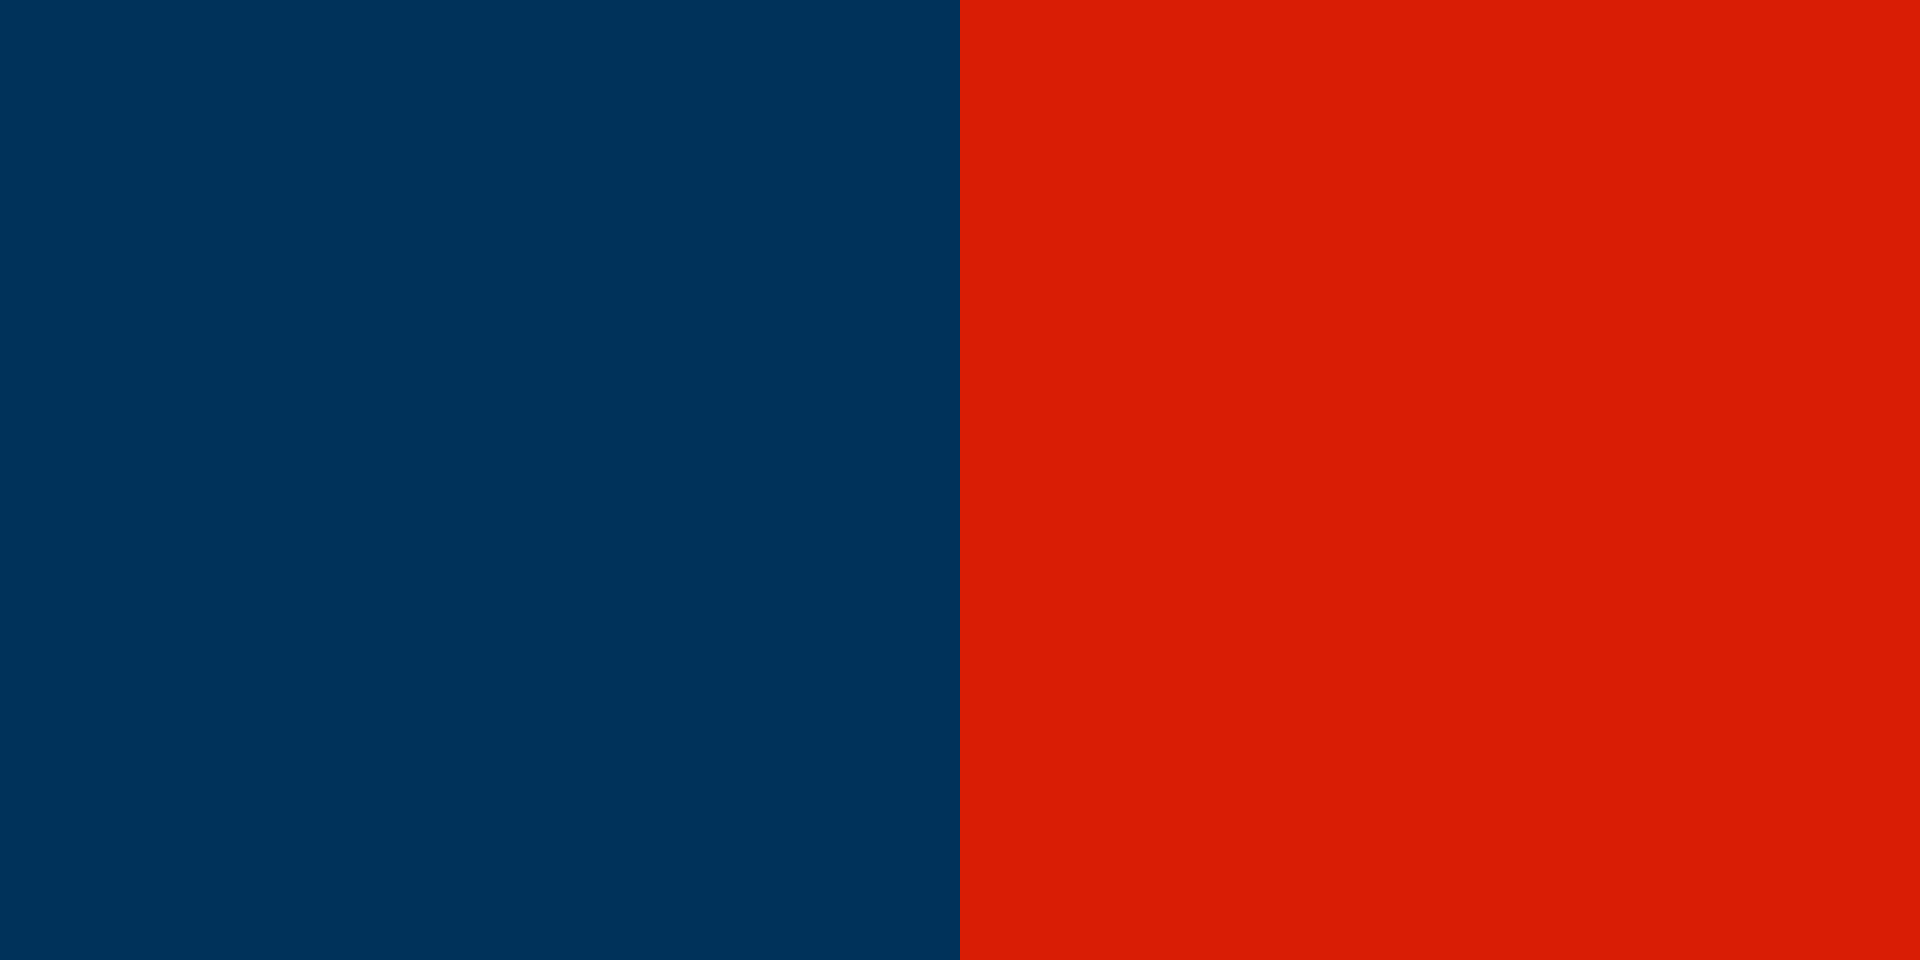 Le drapeau haïtien : symbole de liberté et d'unité